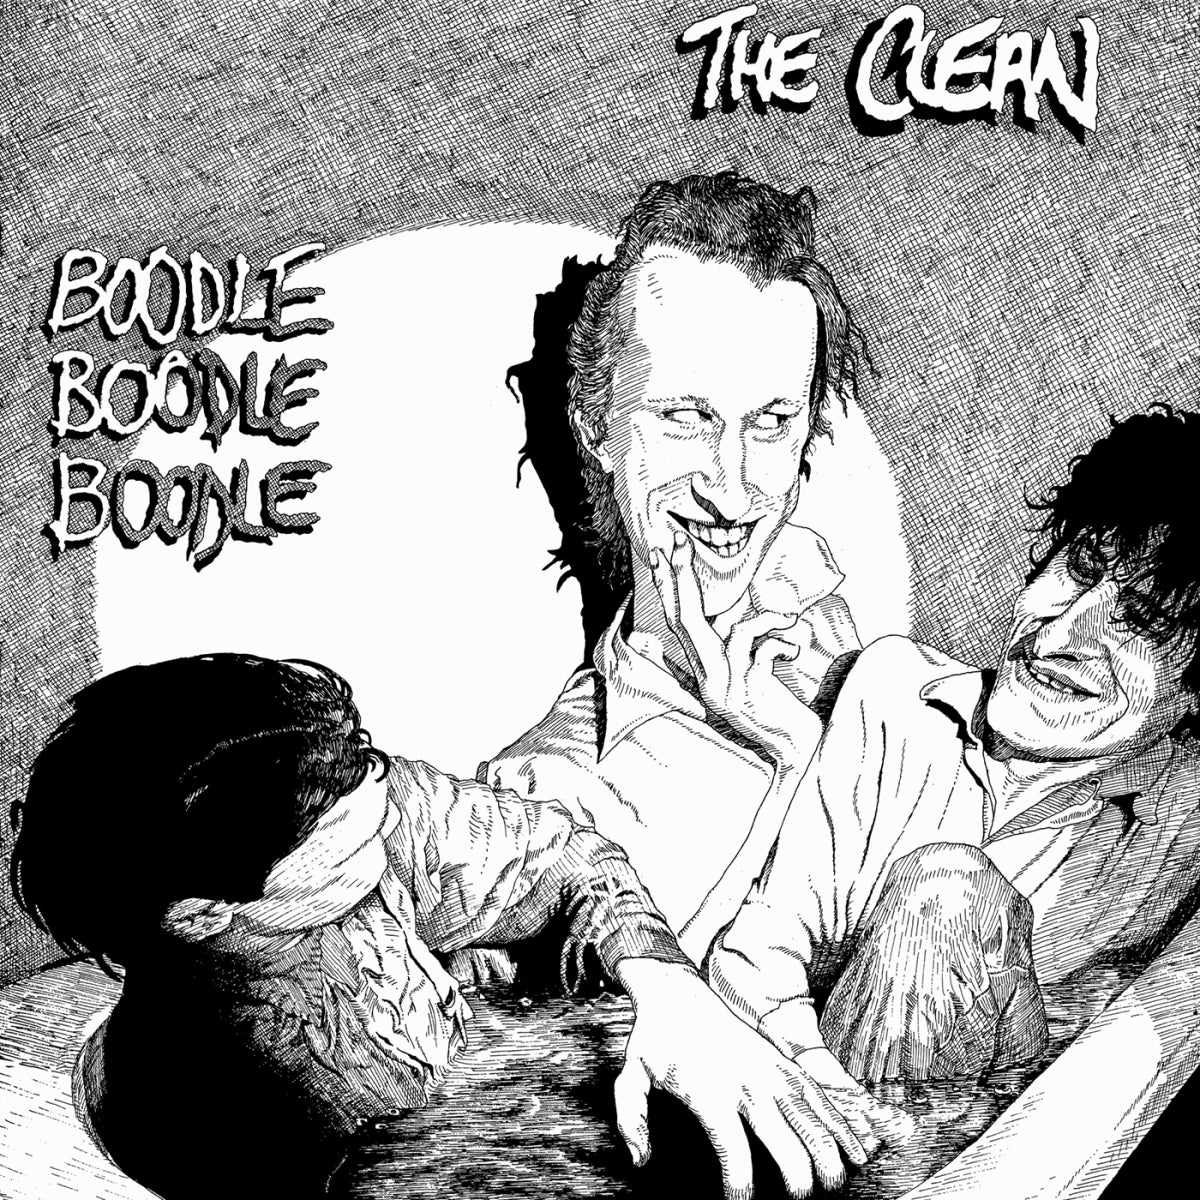 THE CLEAN - "BOODLE BOODLE BOODLE" LP